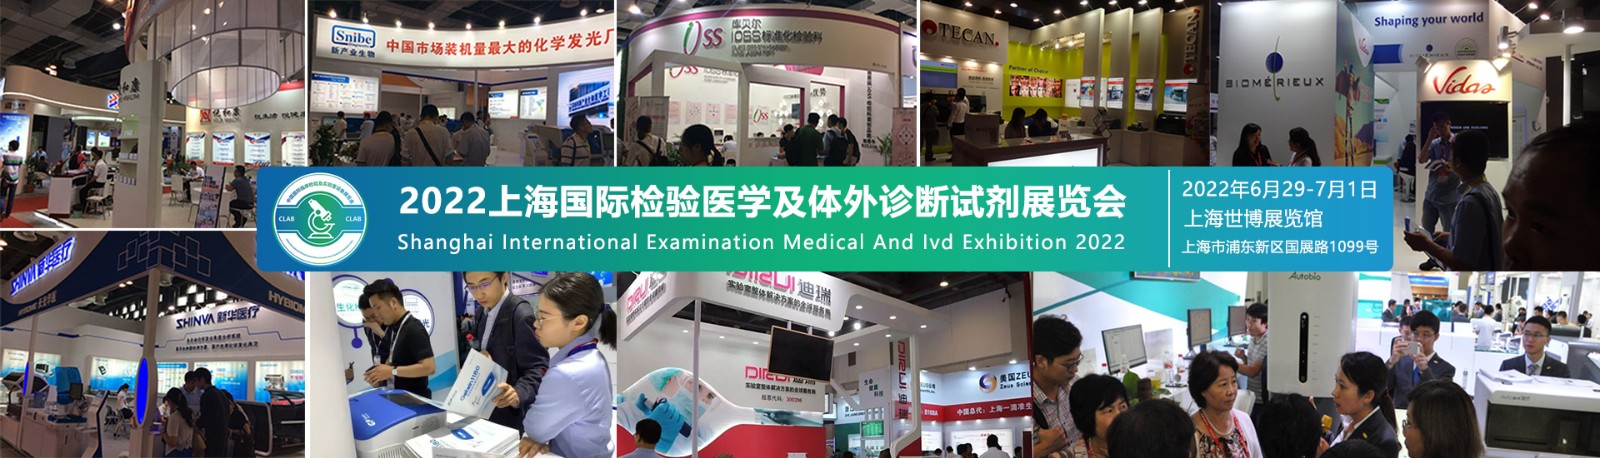 2022上海国际检验医学及IVD体外诊断试剂展览会开始招商